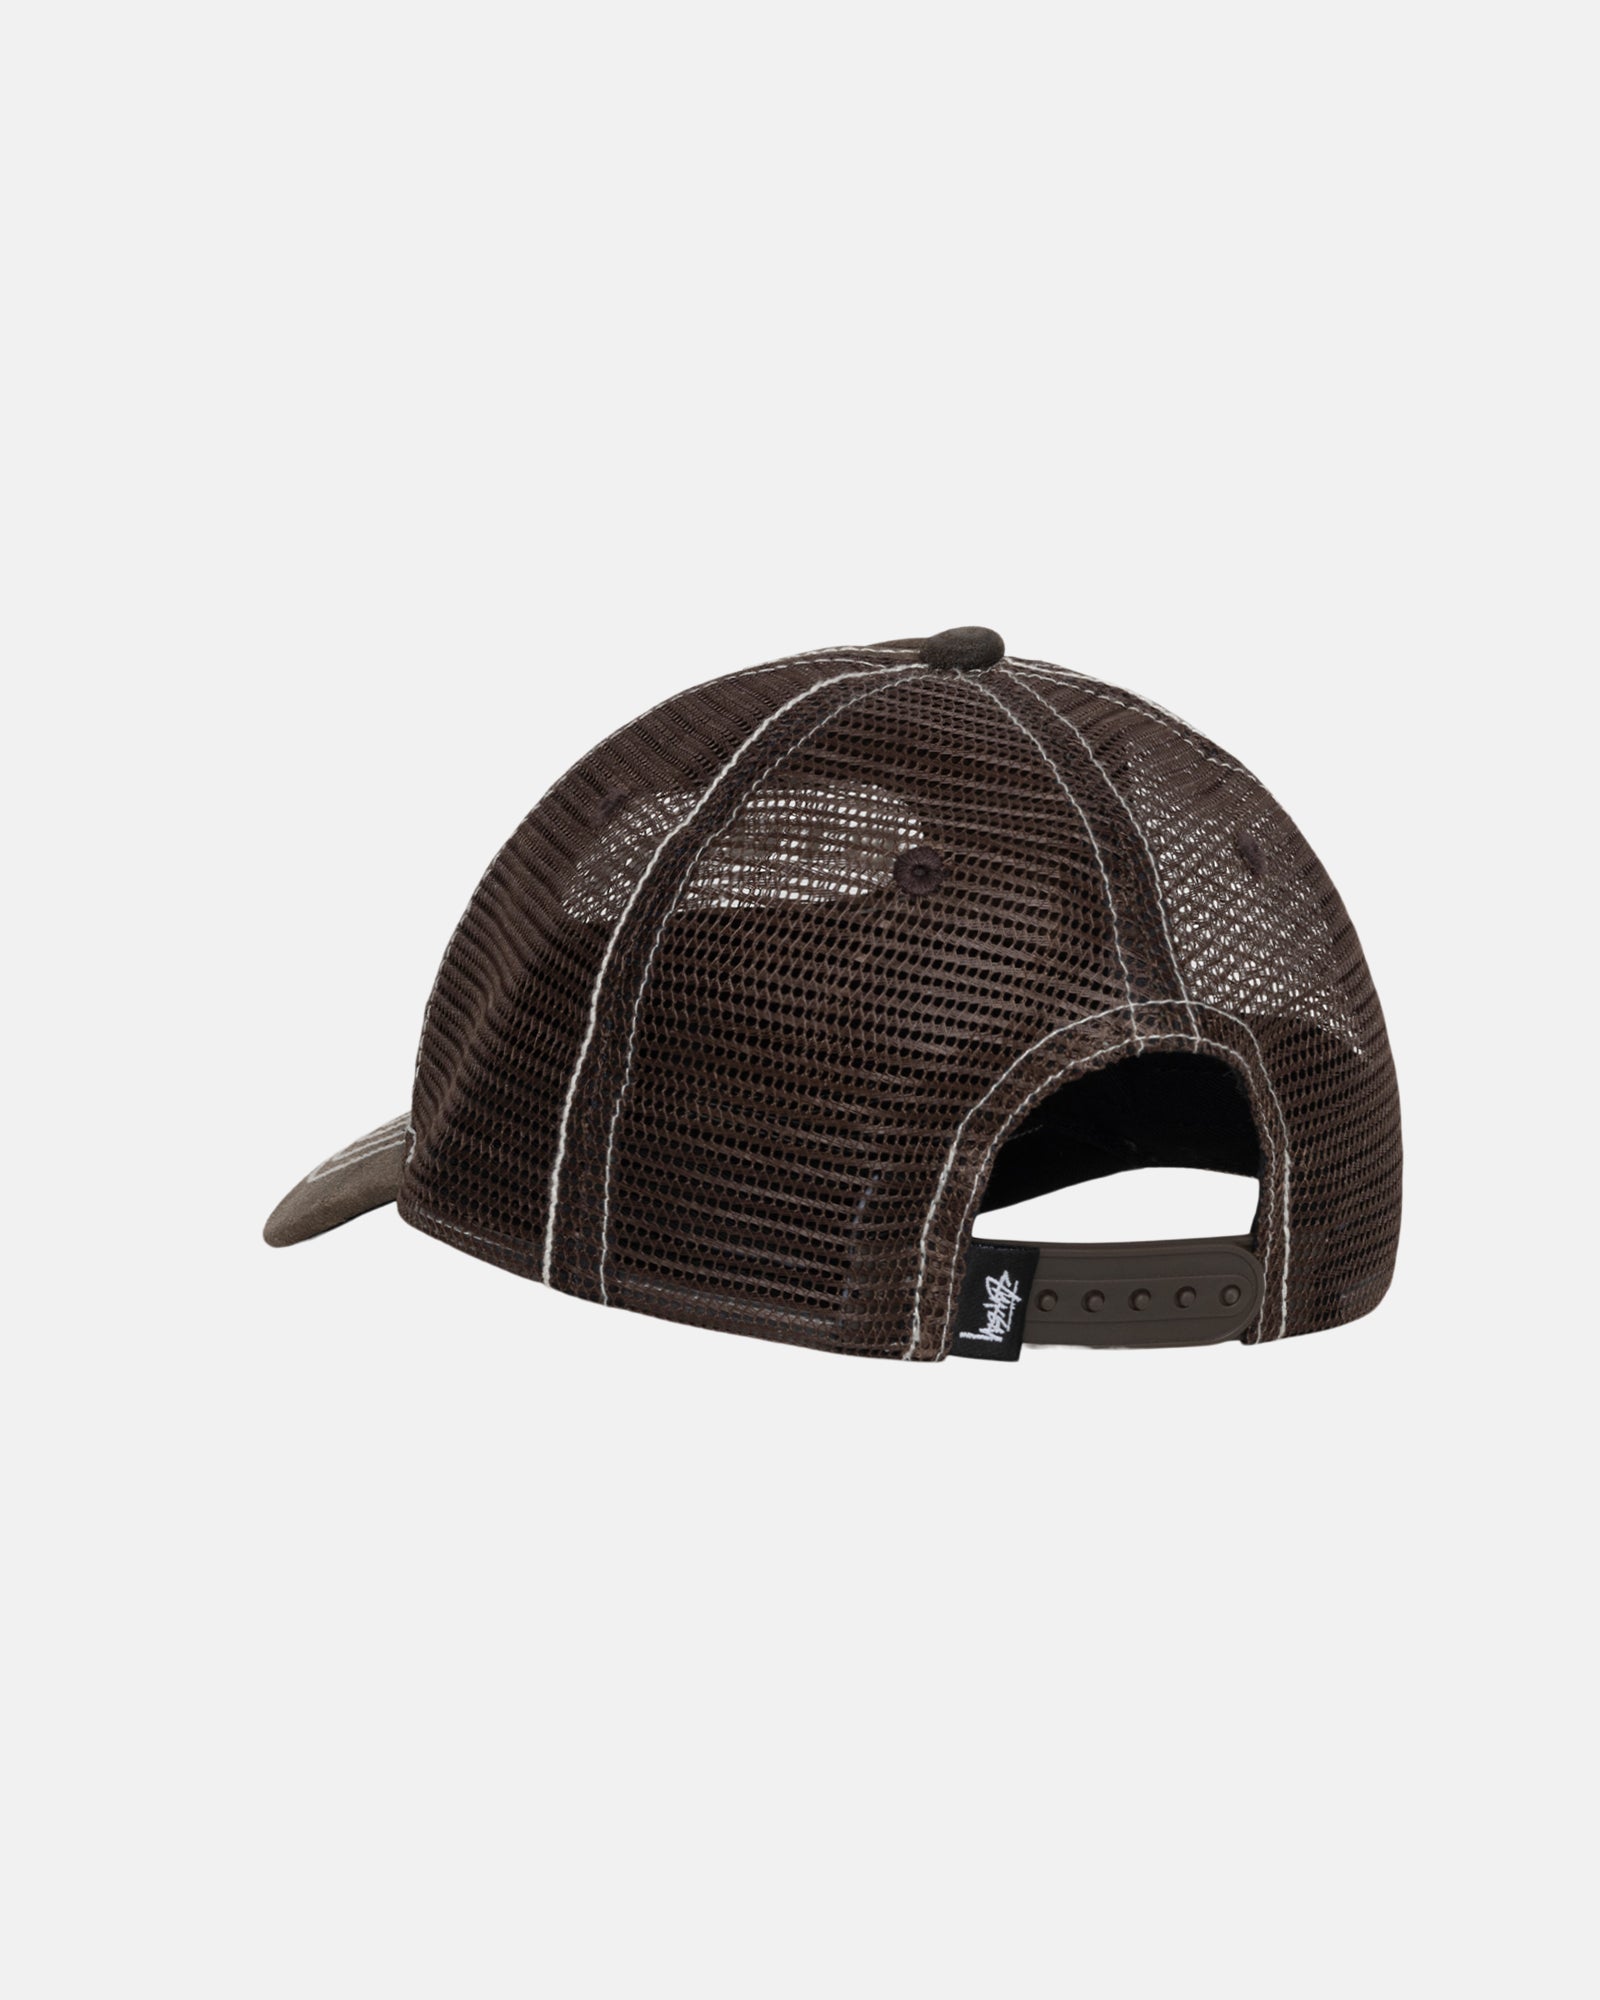 Stüssy Low Pro Trucker Cut-Out Leather Snapback Brown Headwear